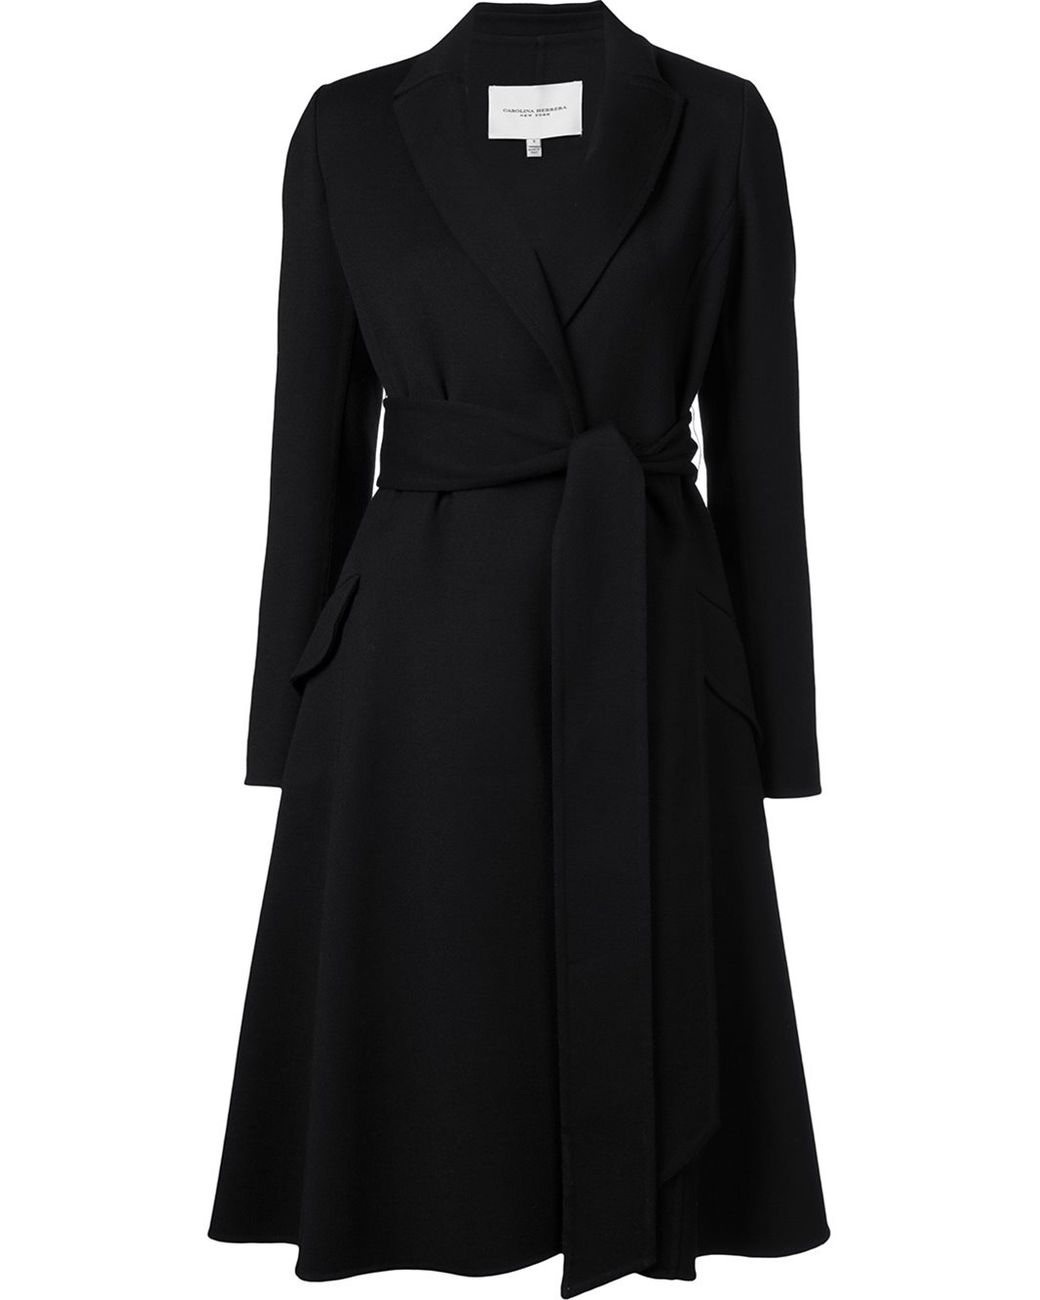 Carolina Herrera Belted A-line Coat in Black | Lyst